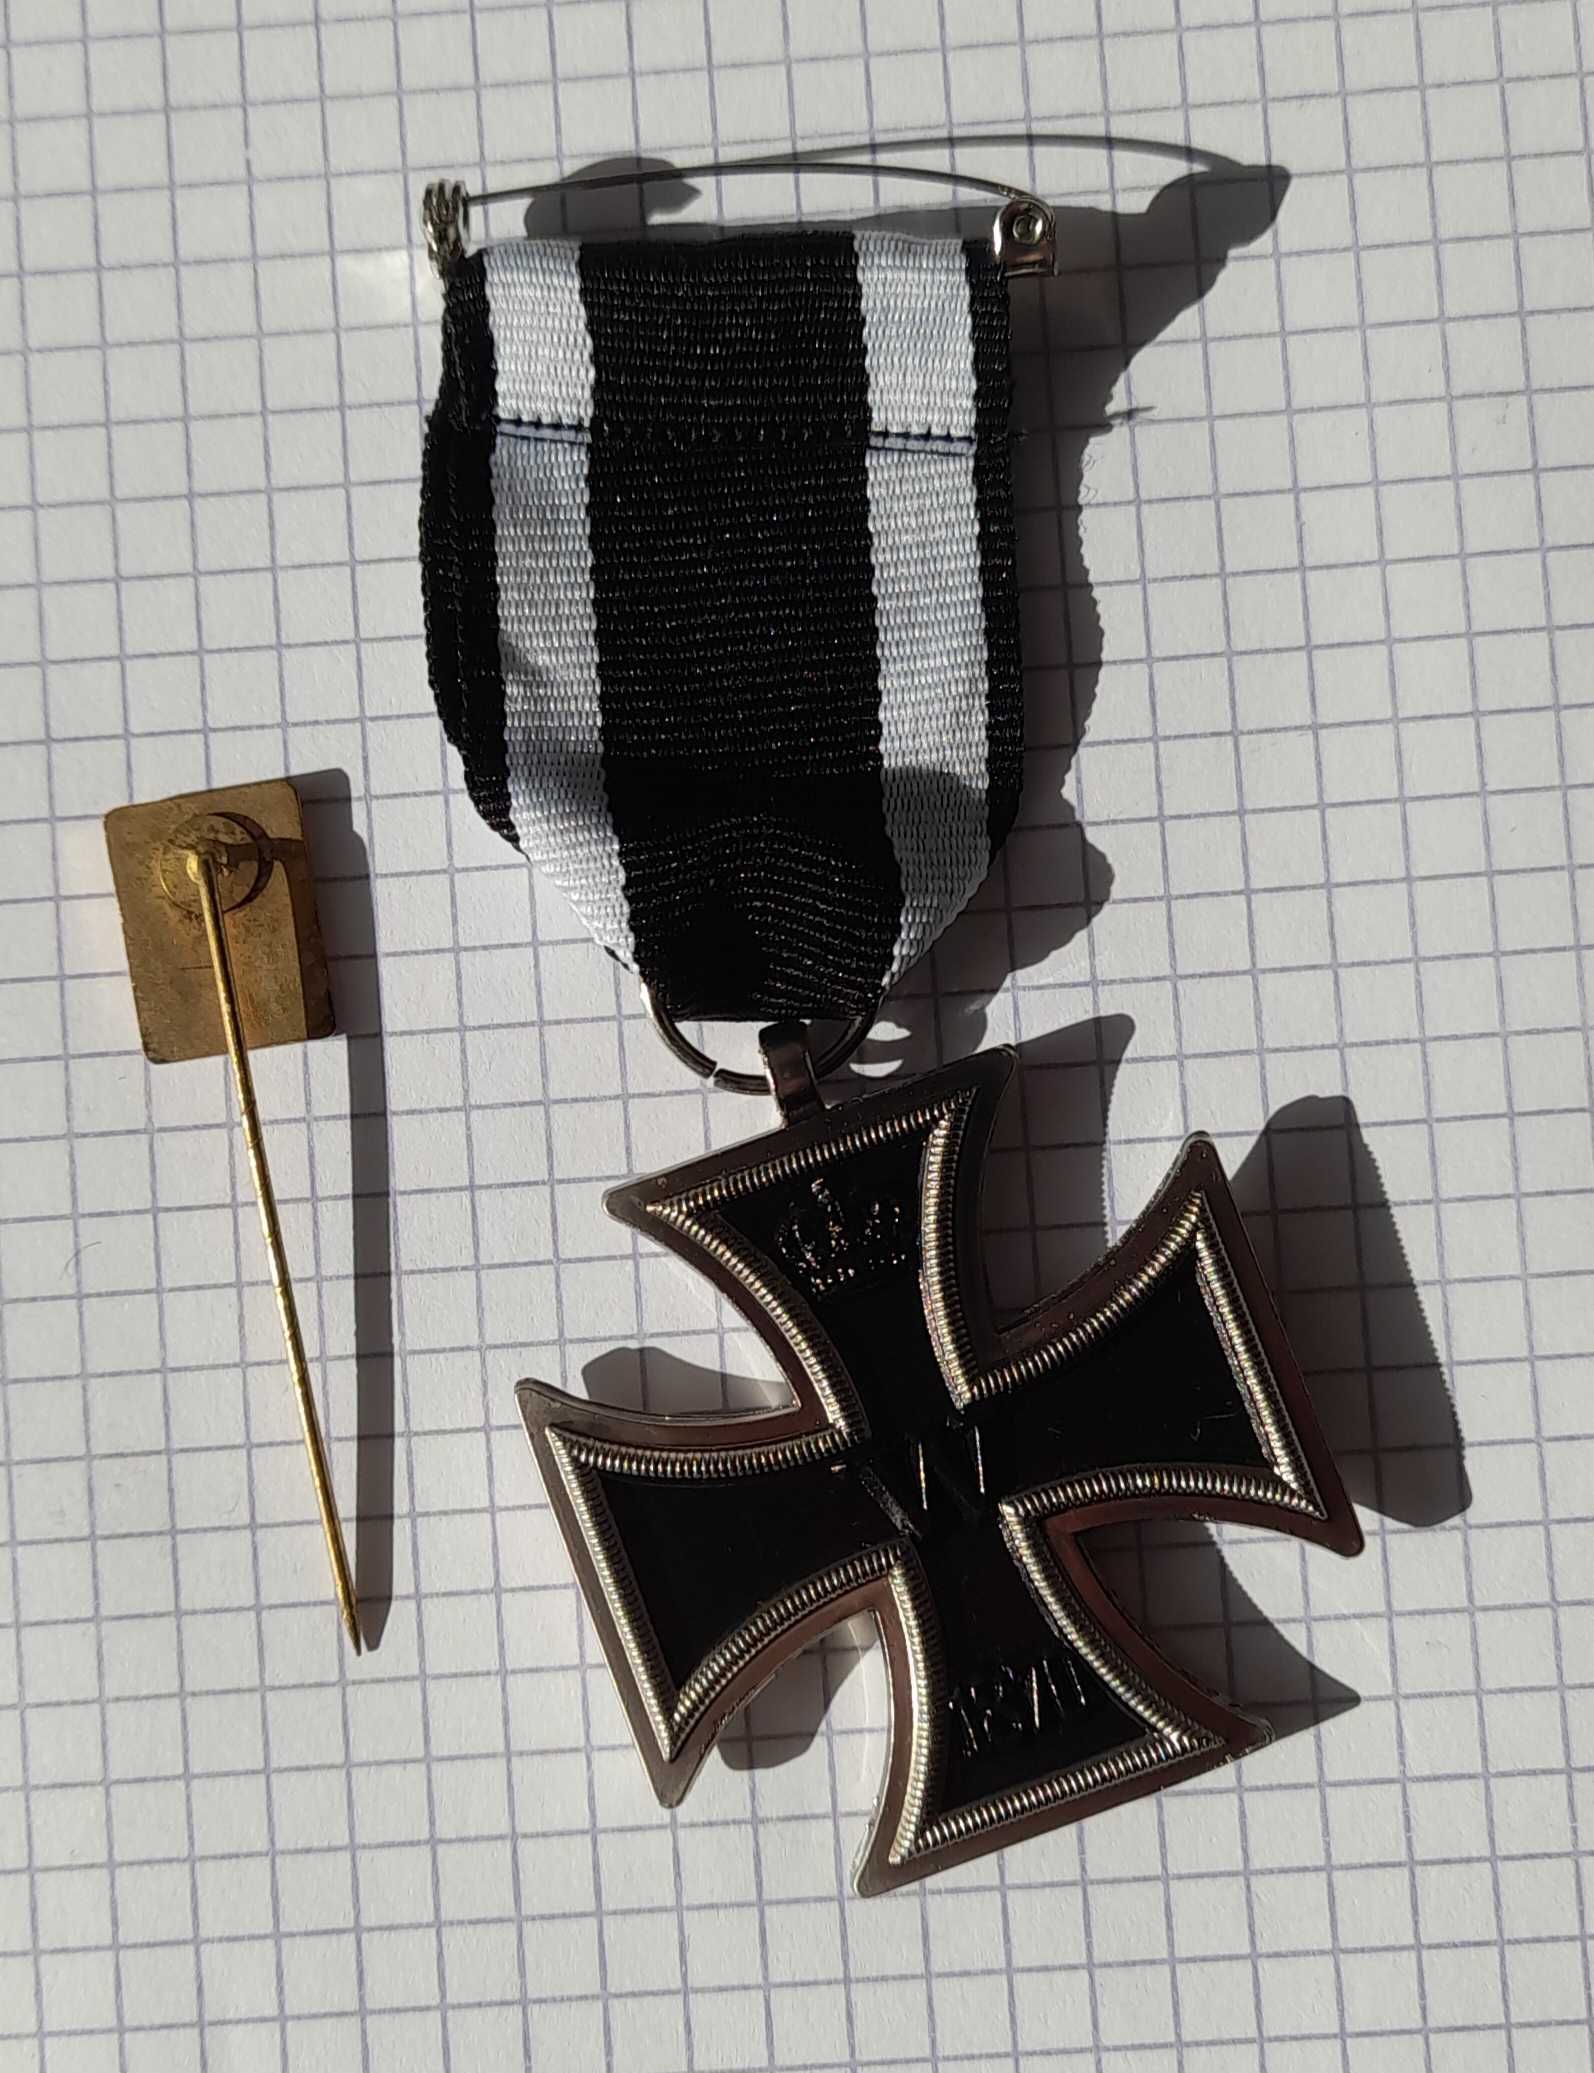 odznaka RAD, VDSF gapa Luftwaffe, nieśmiertelnik, medal rzesza Niemcy